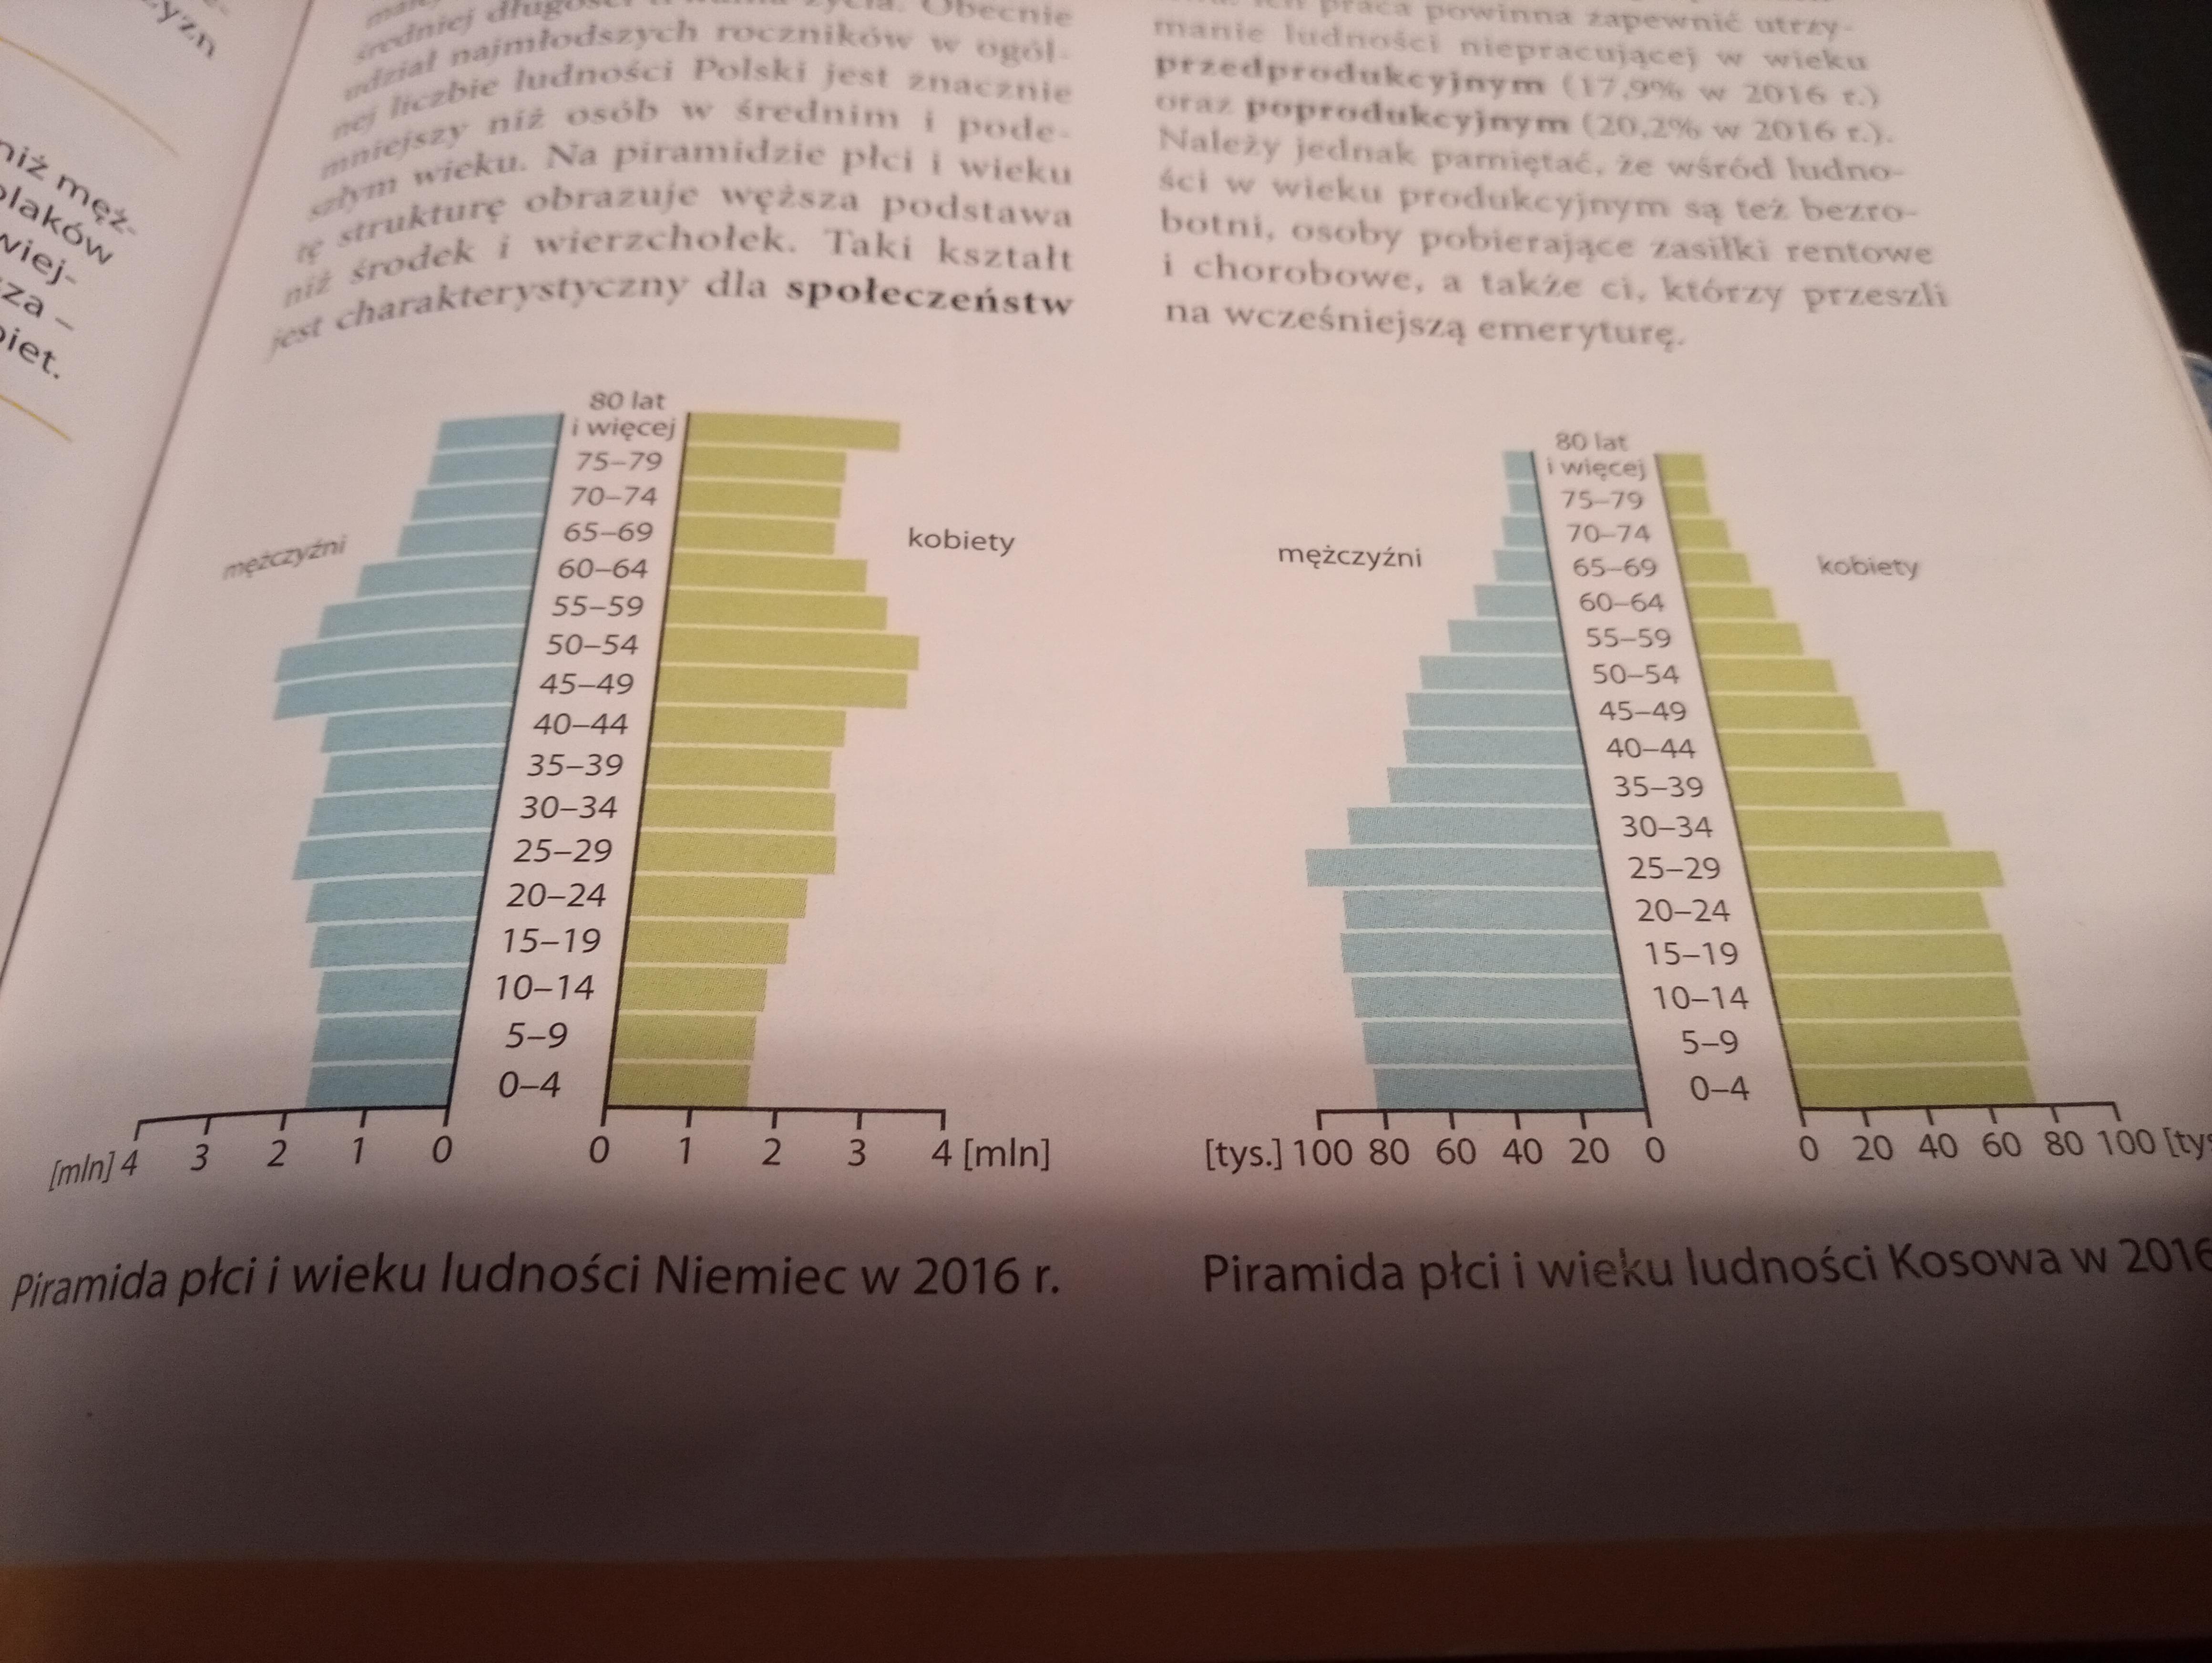 Ludność I Urbanizacja W Polsce Quiz Sprawdzian kl.7 ludność i urbanizacja w Polsce - Quizizz